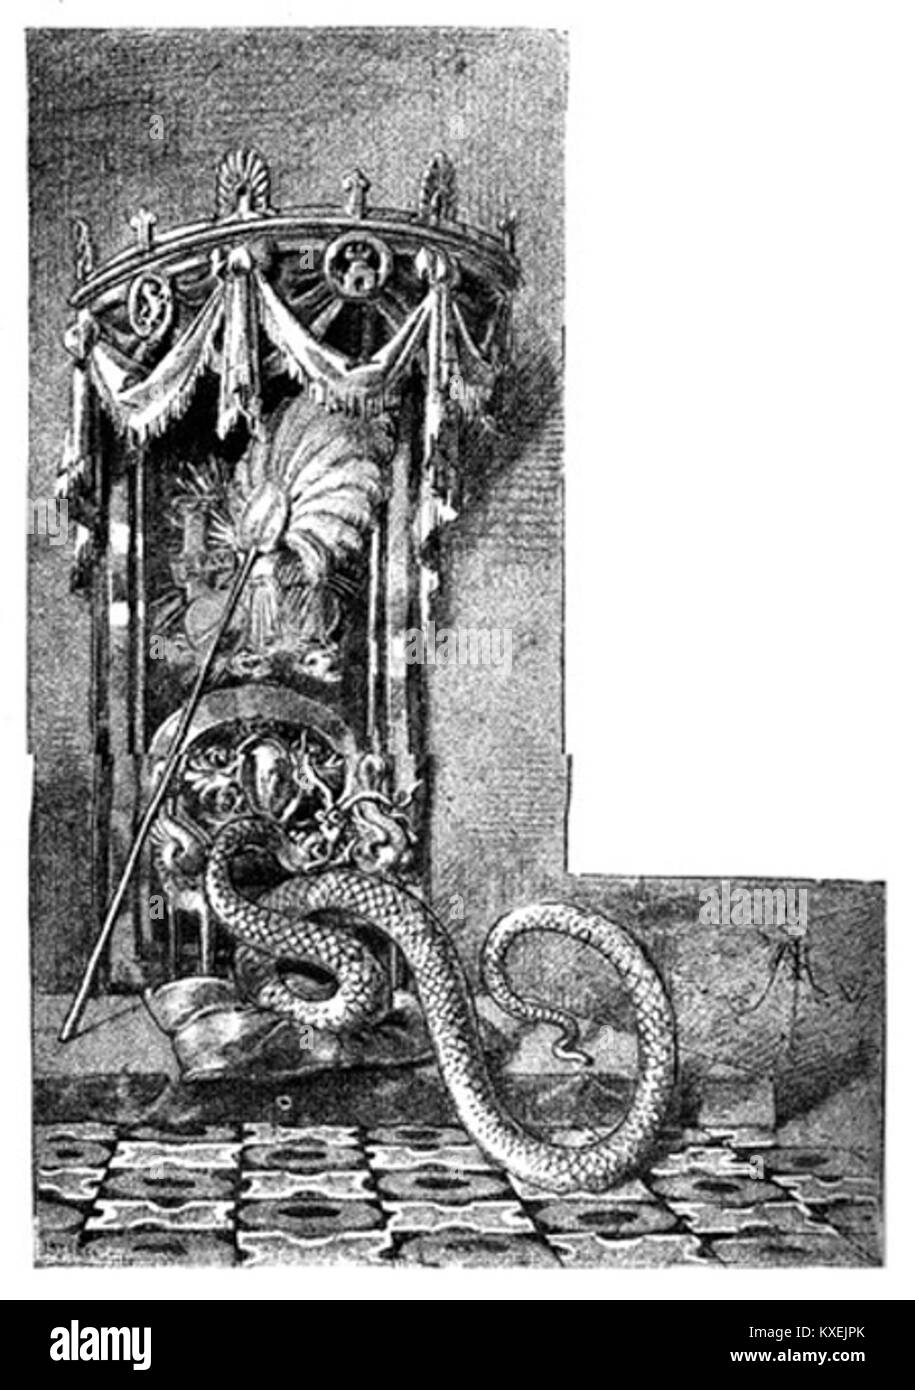 Alegoría de la anarquía con forma de serpiente. Ilustración de 'La segunda casaca' de Galdós Stock Photo